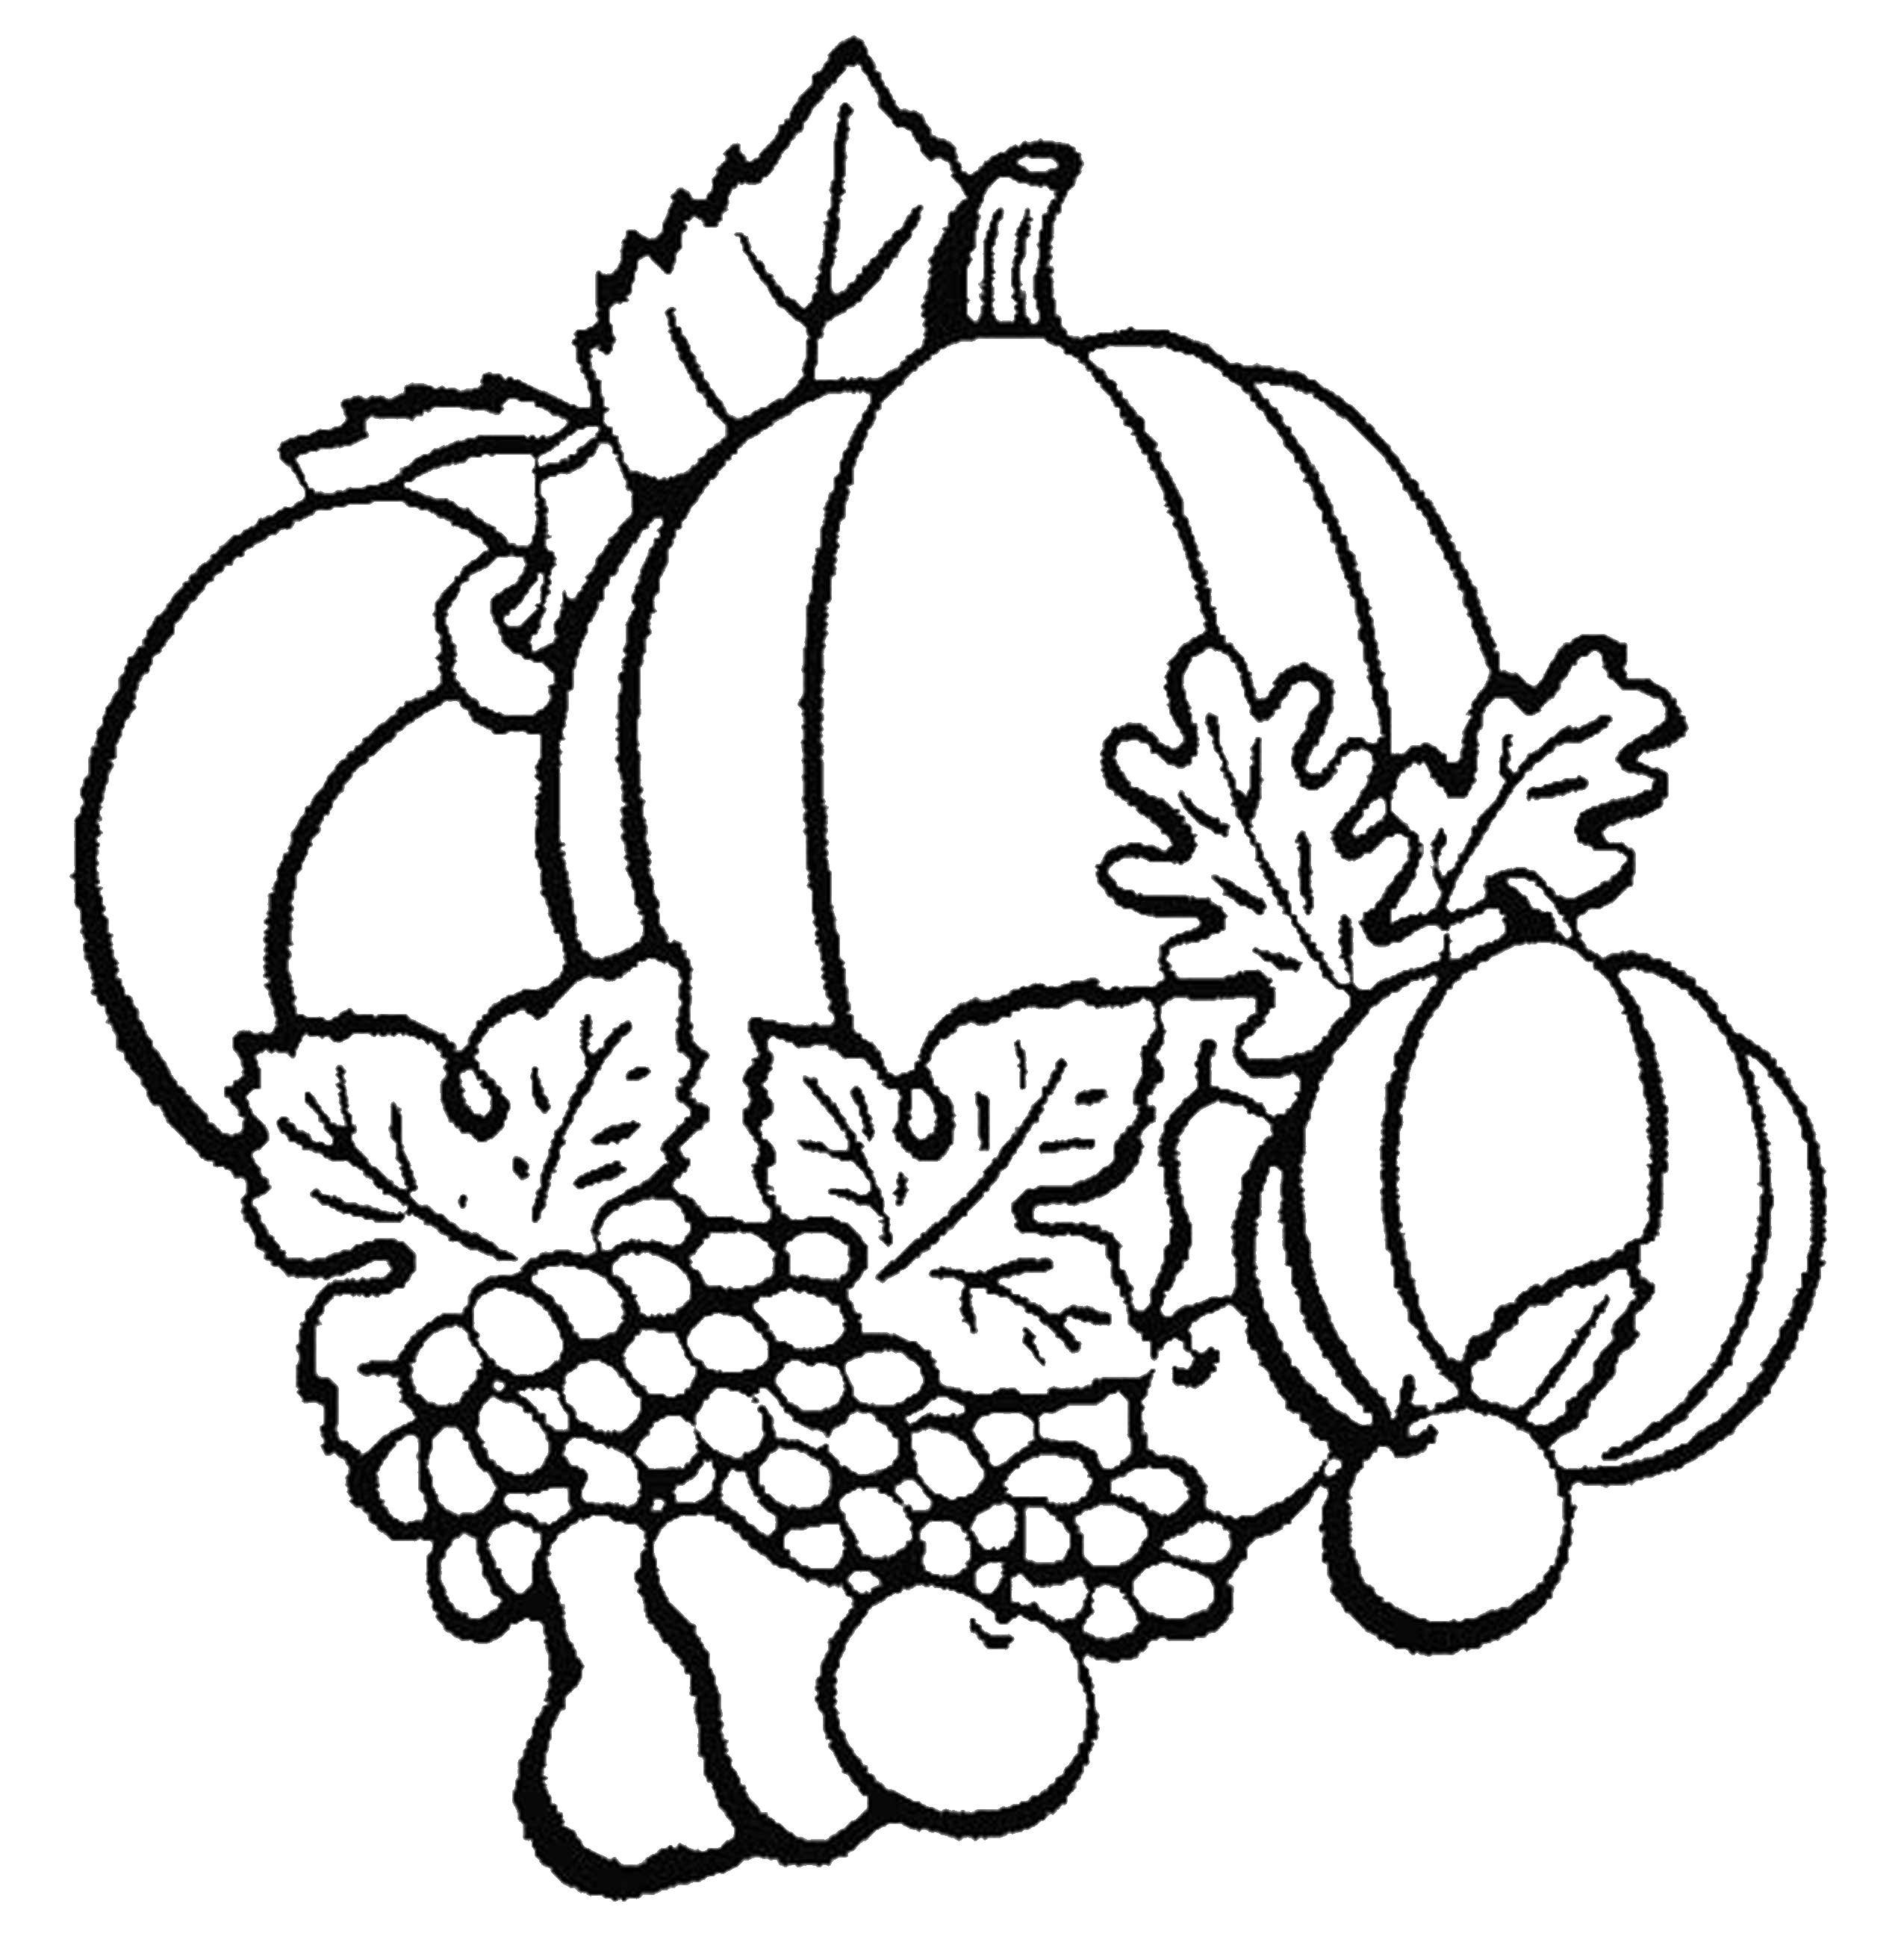 Название: Раскраска Тыквы, фрукты, виноград. Категория: Осень. Теги: урожай, тыквы, виноград, яблоки.